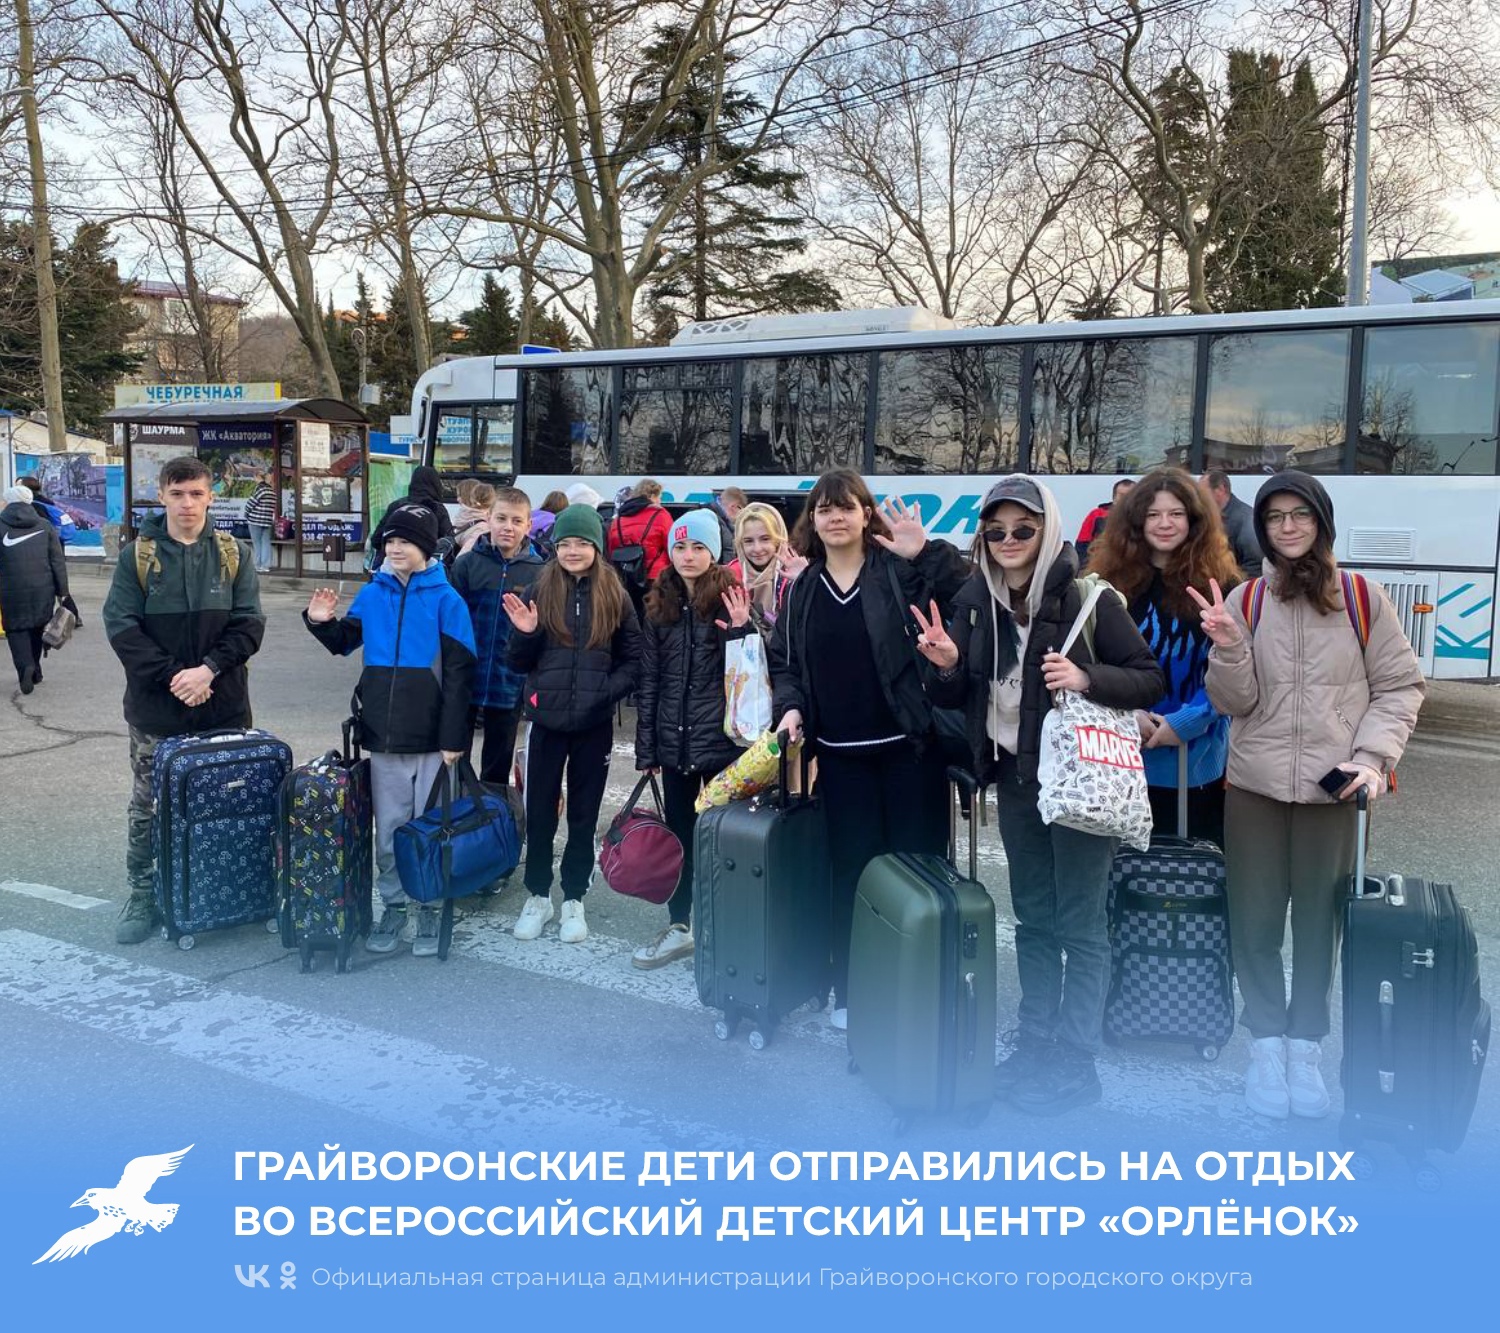 Грайворонские дети отправились на отдых во Всероссийский детский центр «Орлёнок».